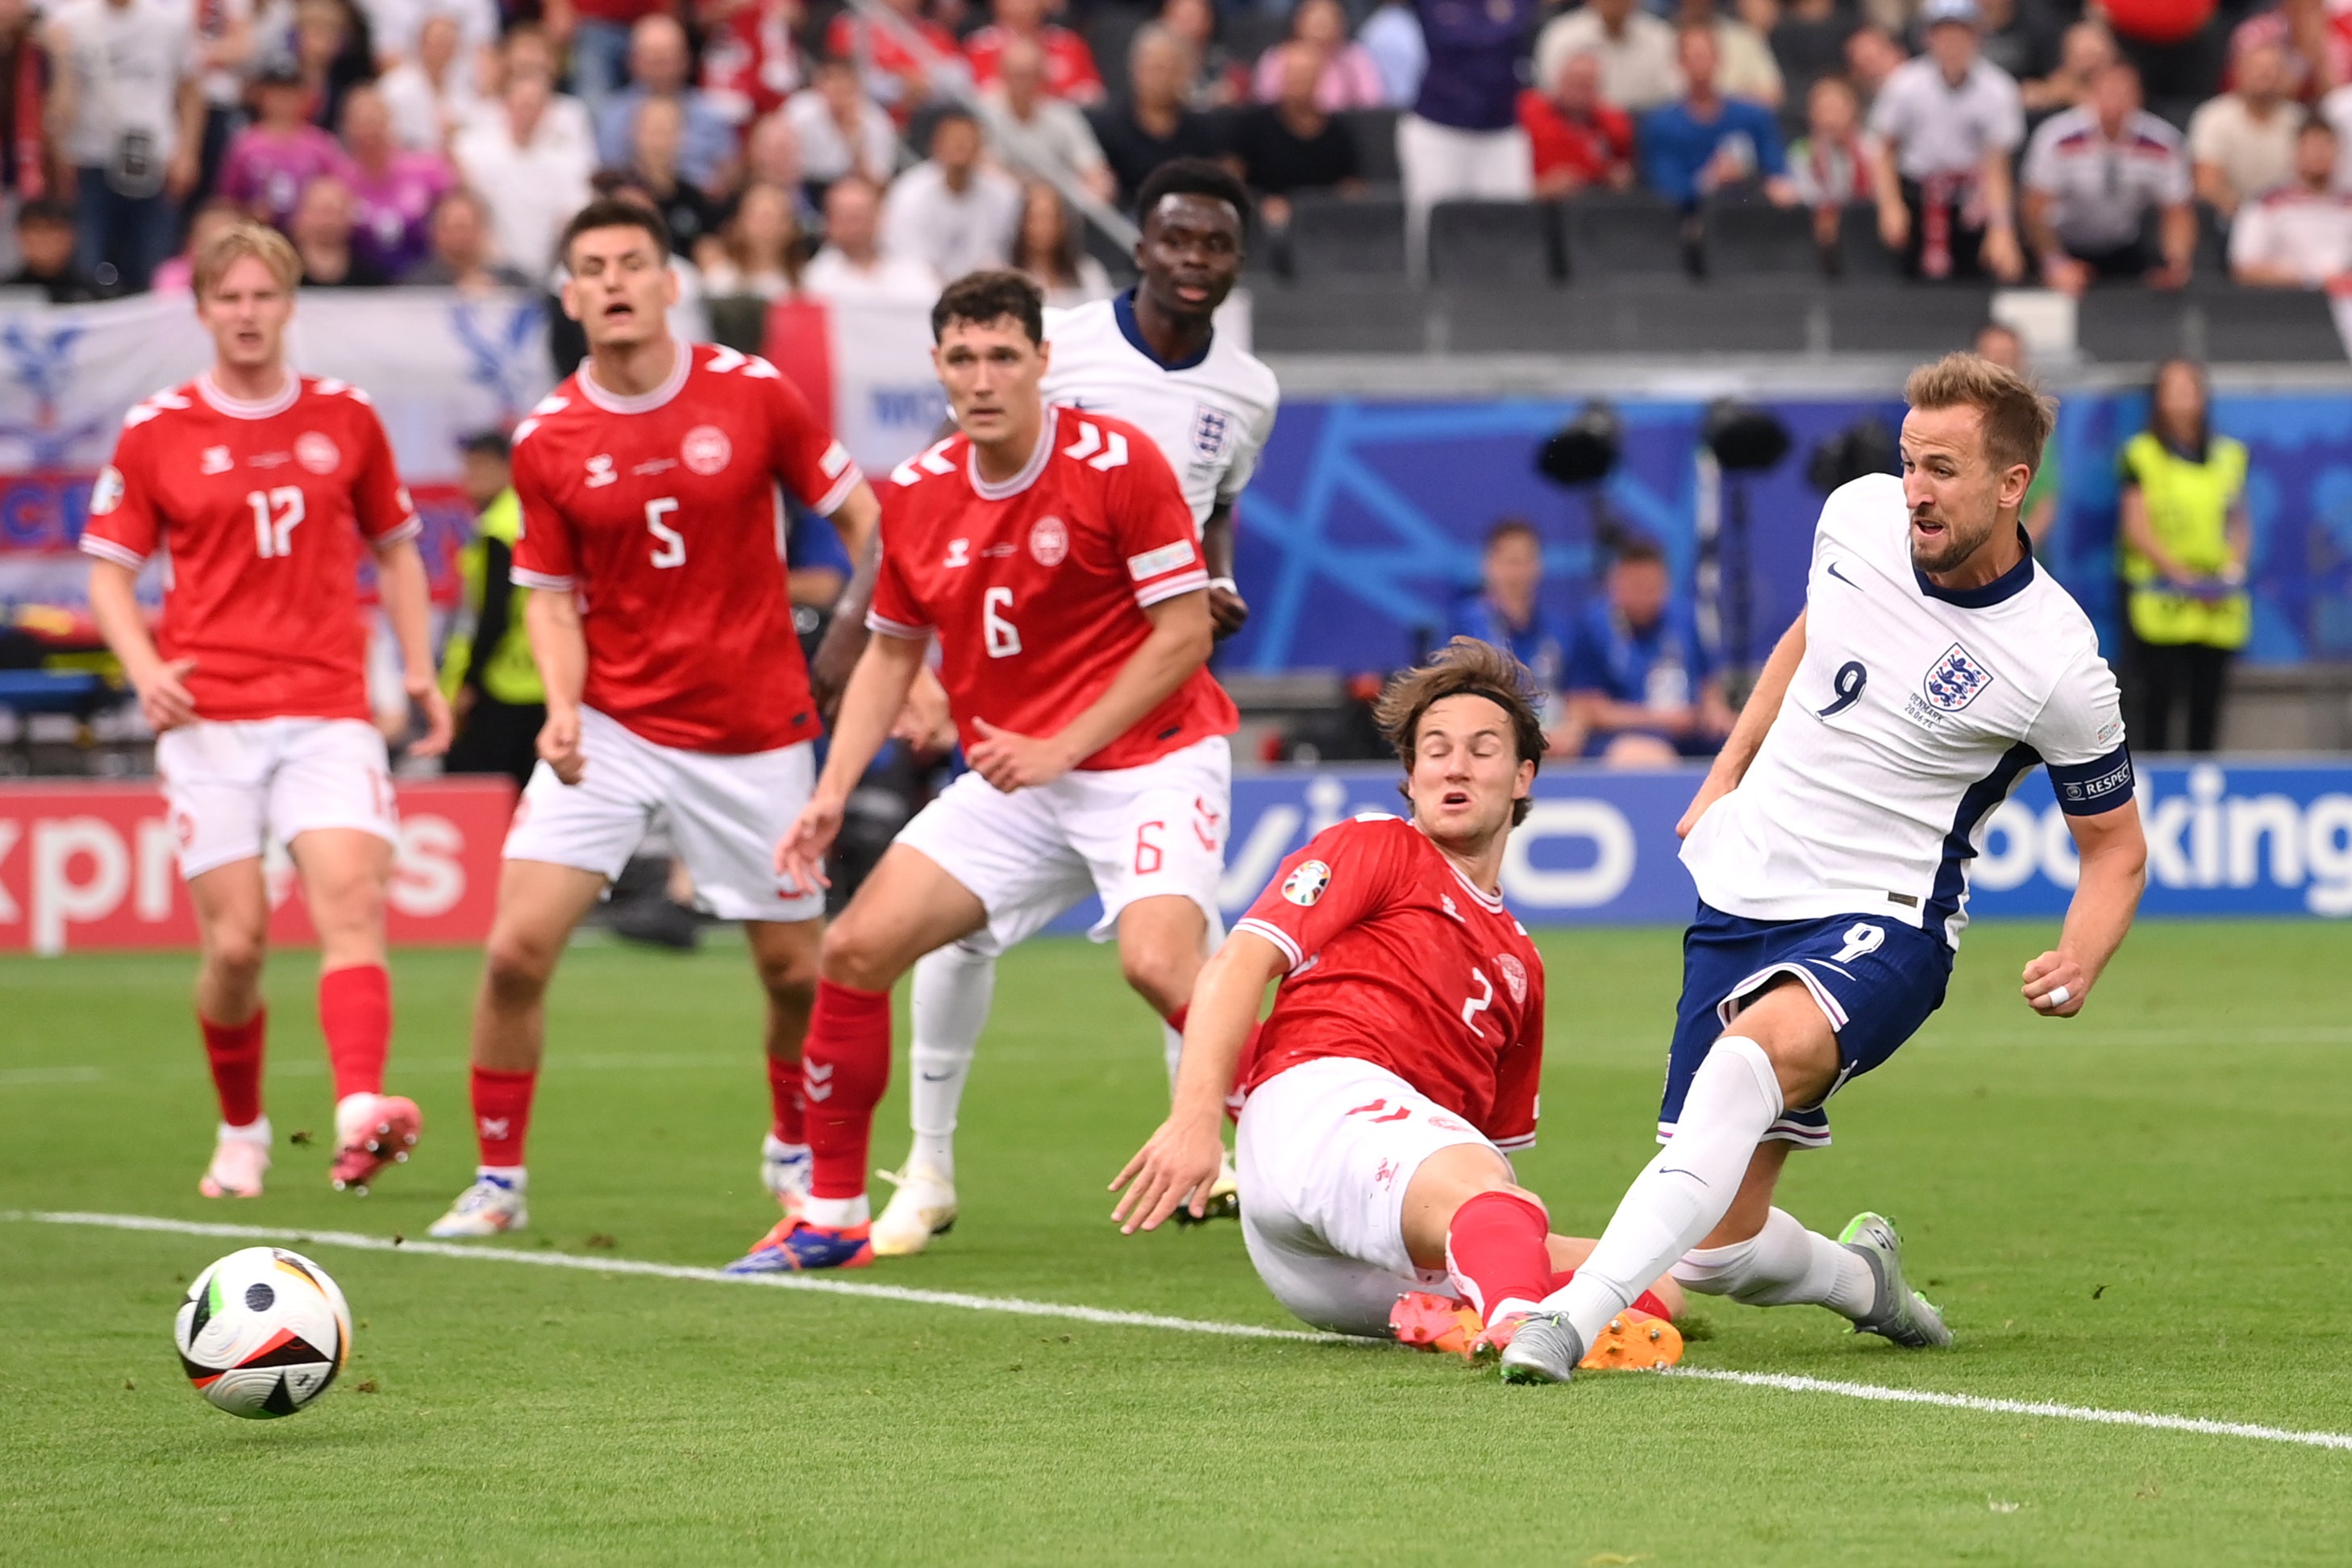 Kane slides the ball into the corner of Denmark’s goal